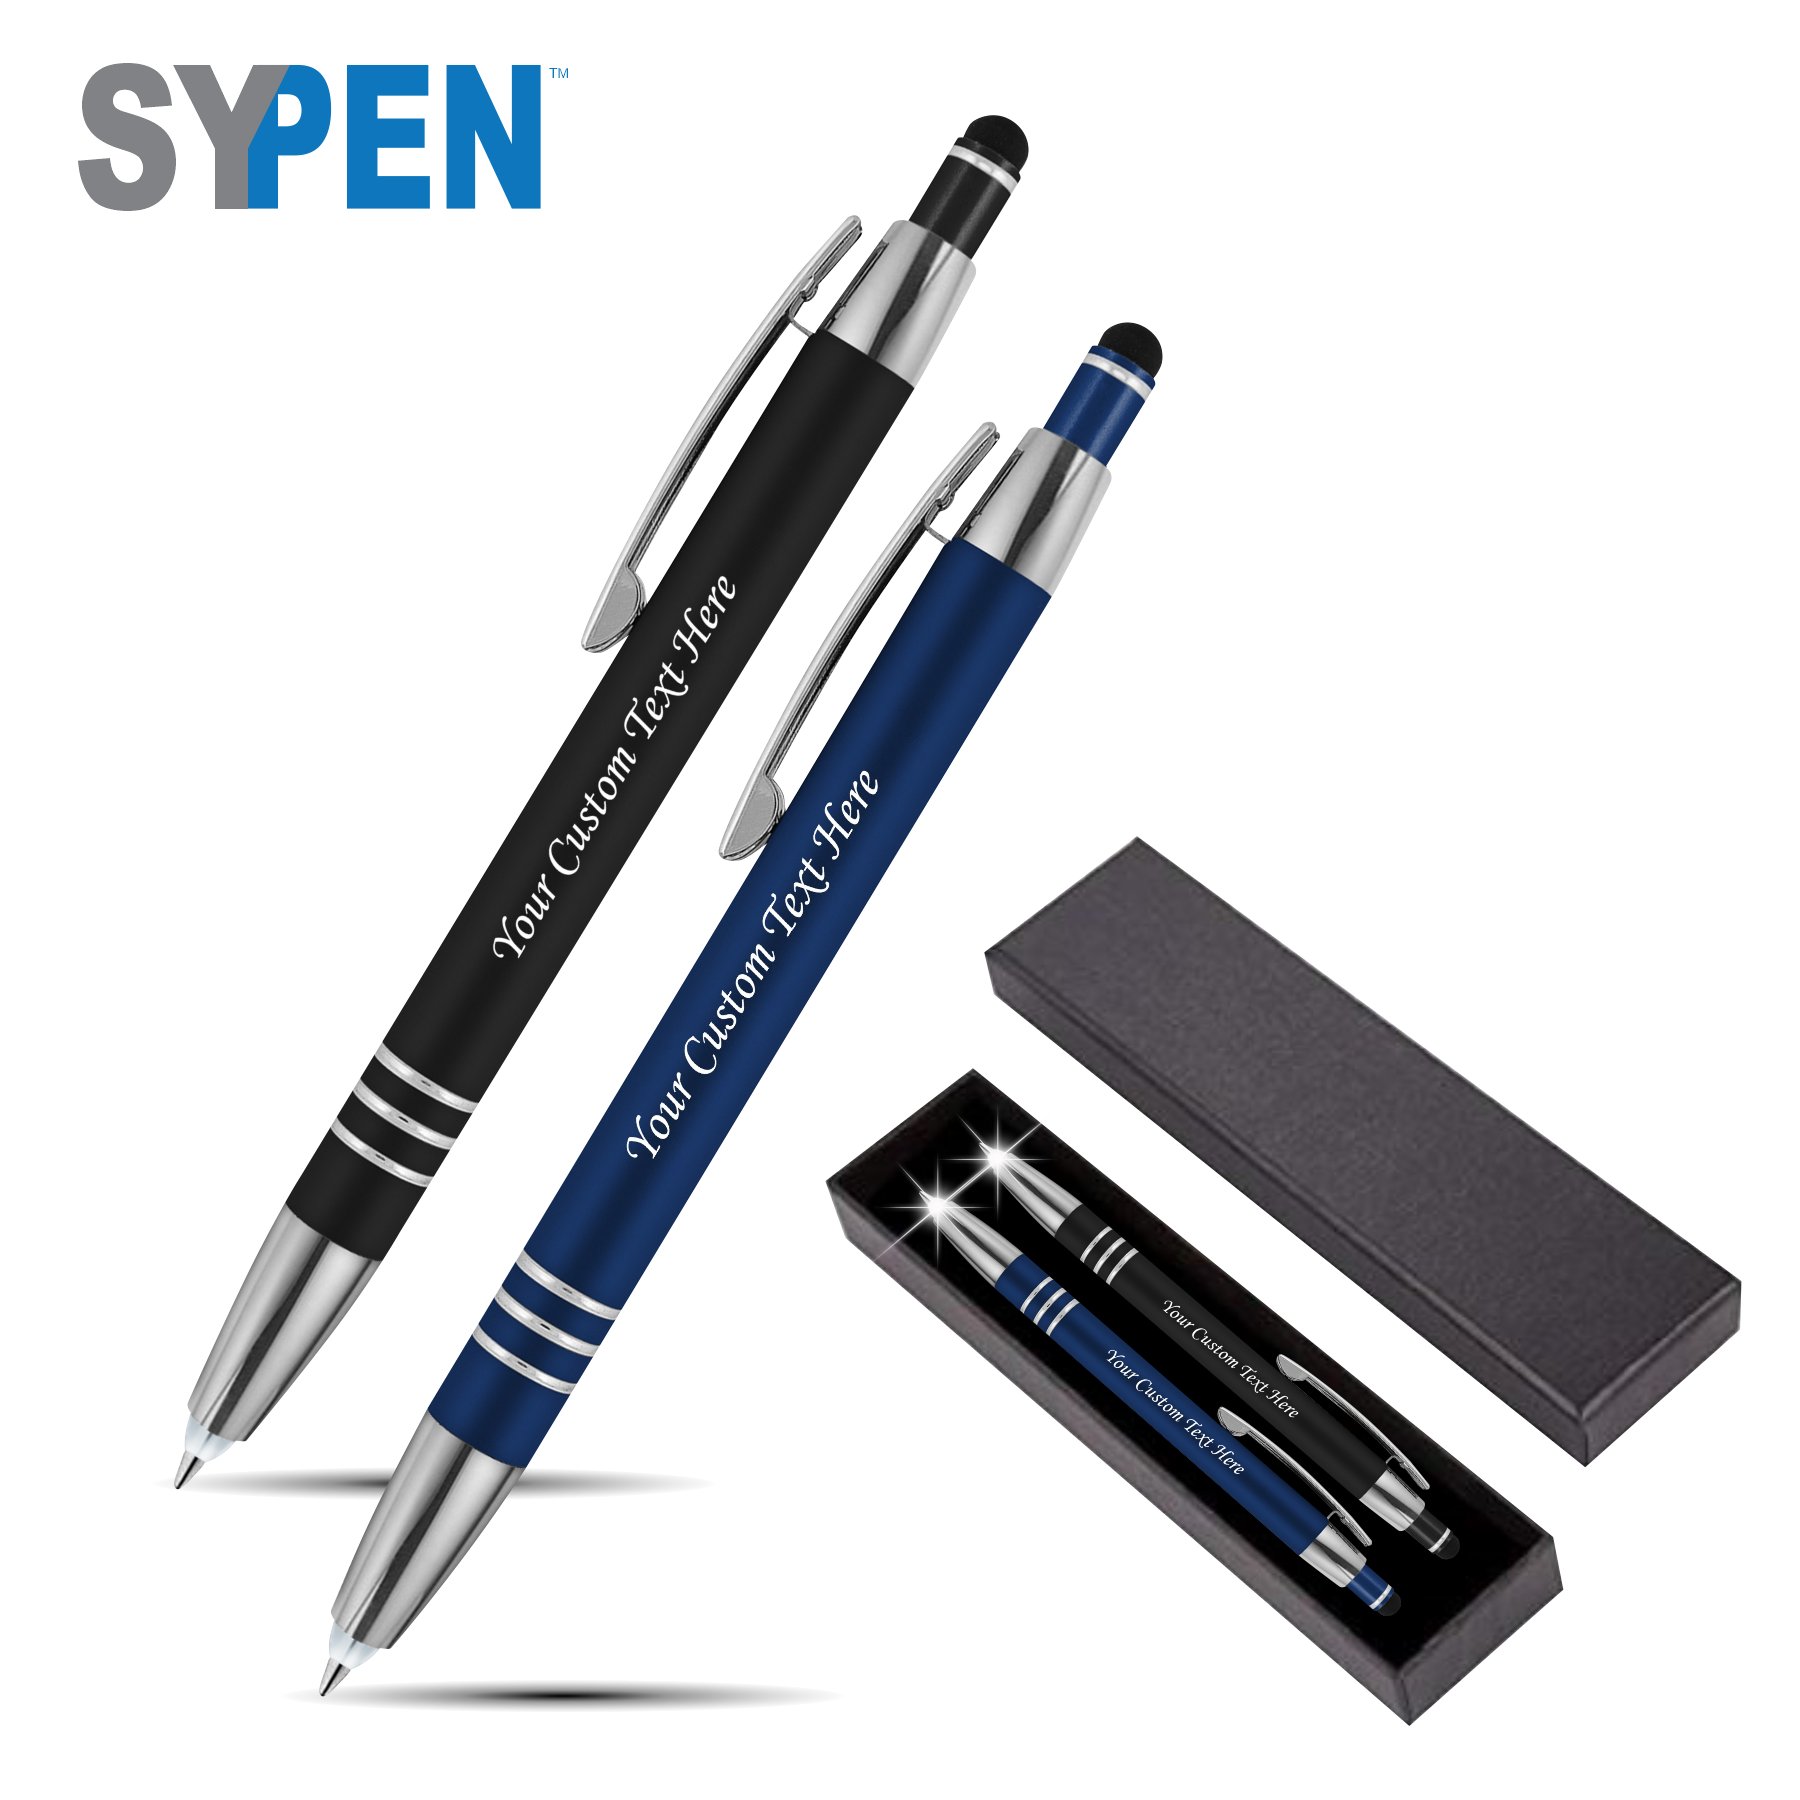 Personalized Pen Set